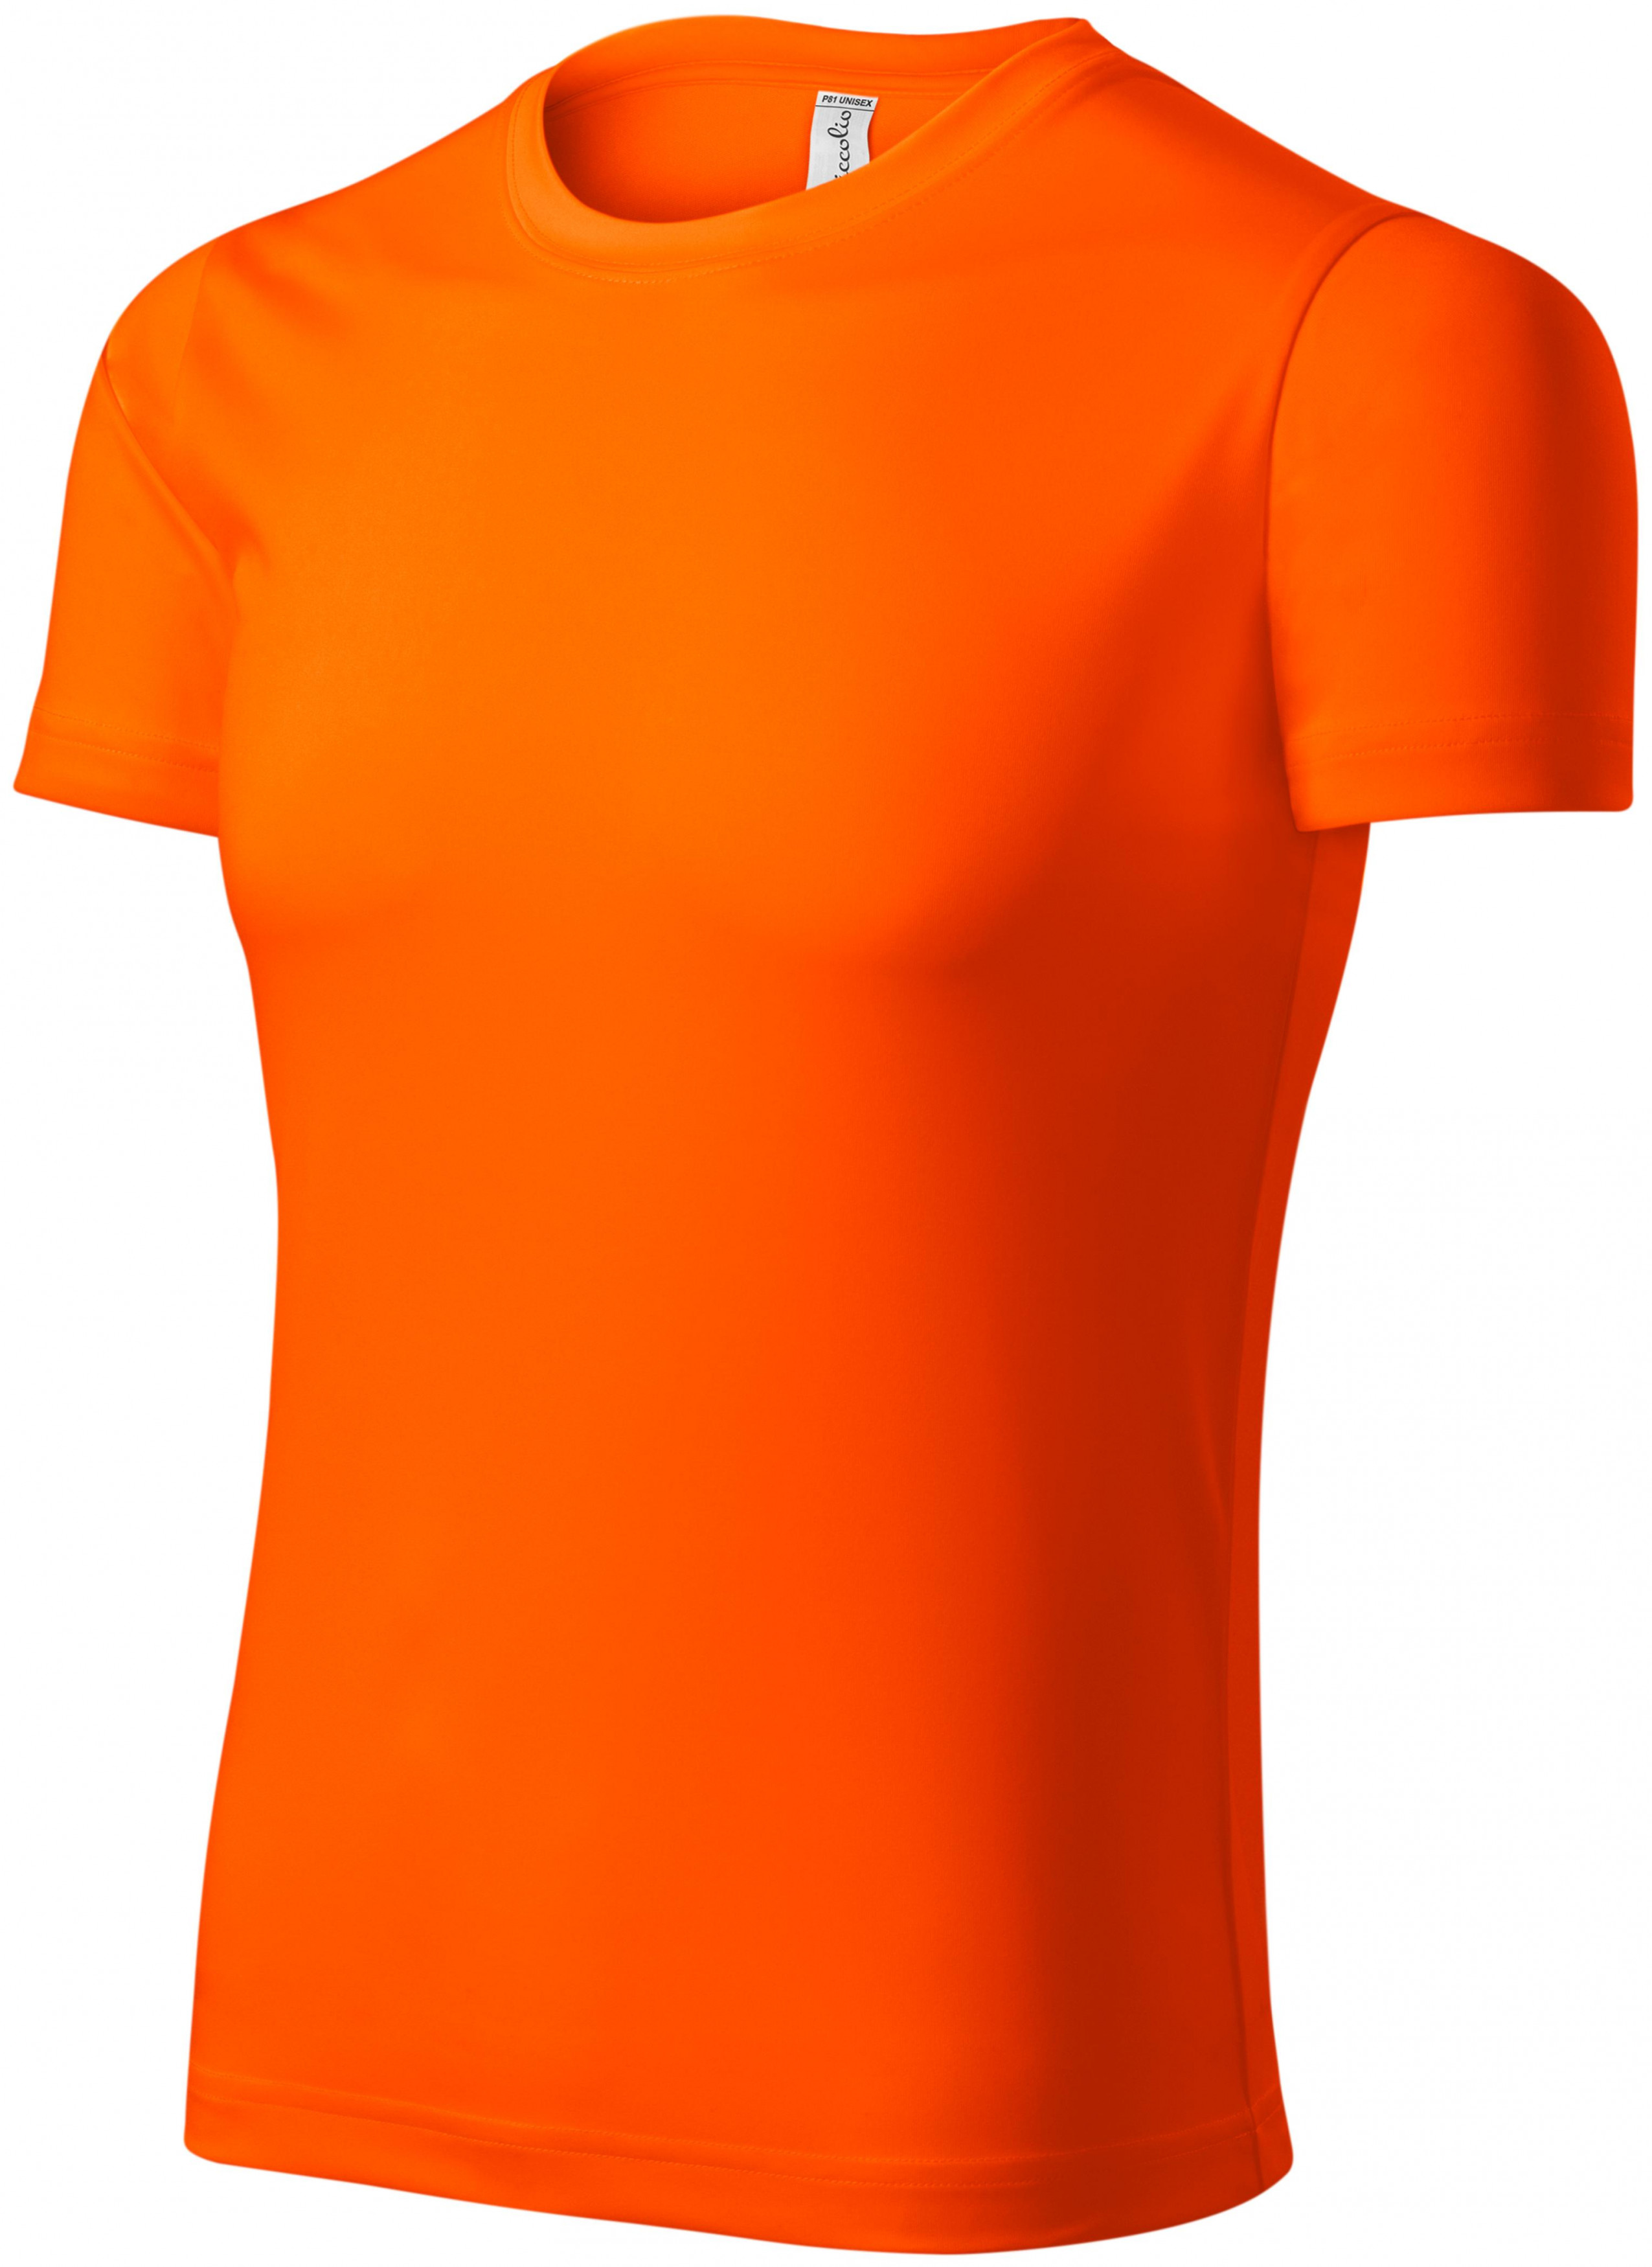 Športové tričko unisex, neónová oranžová, XS